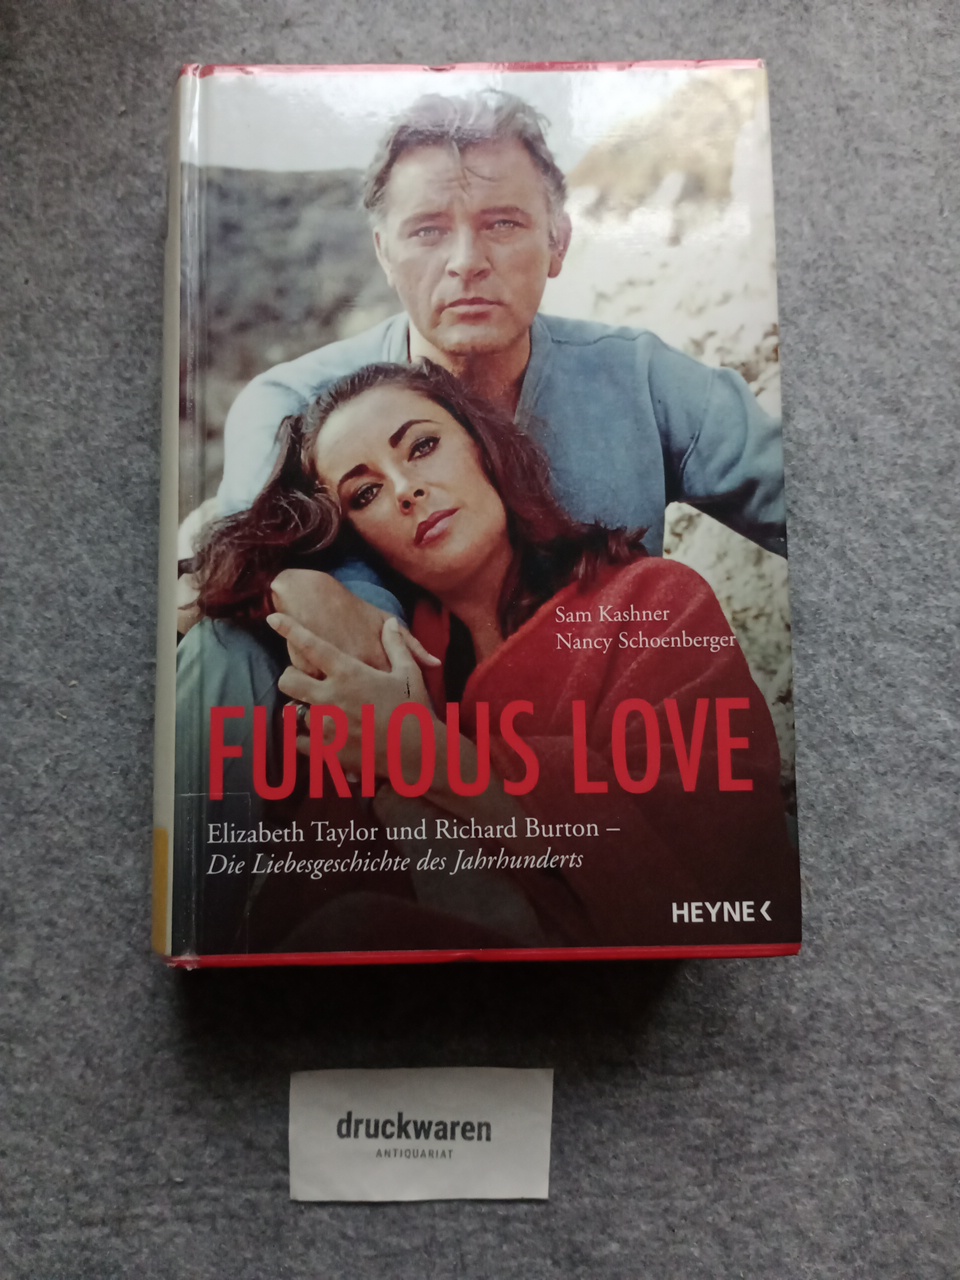 Furious love : Elizabeth Taylor und Richard Burton - die Liebesgeschichte des Jahrhunderts. - Kashner, Sam und Nancy Schoenberger